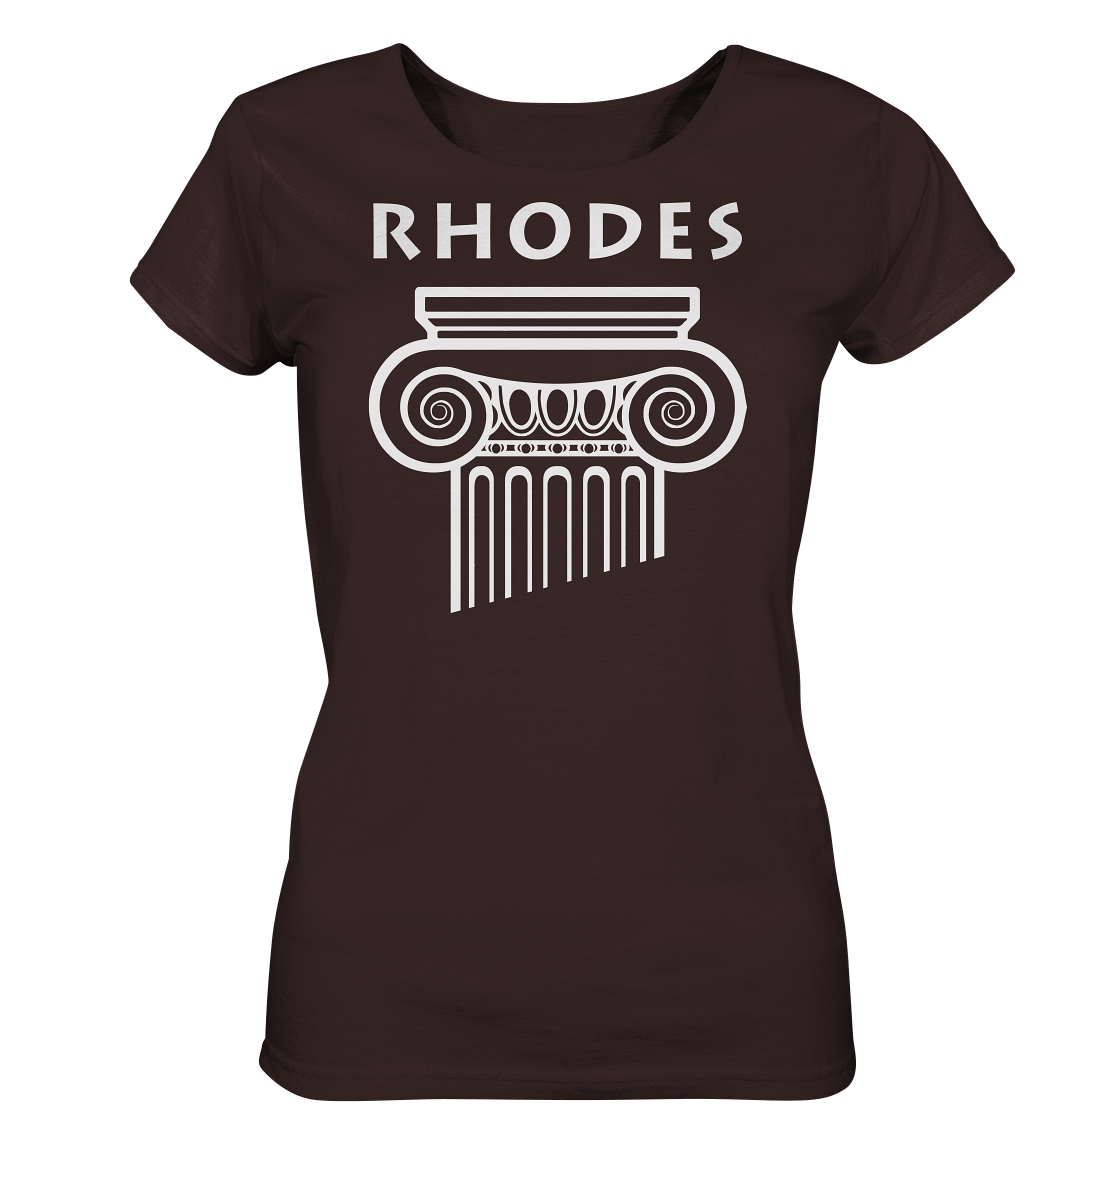 Rhodes Greek Column Head - Ladies Organic Shirt